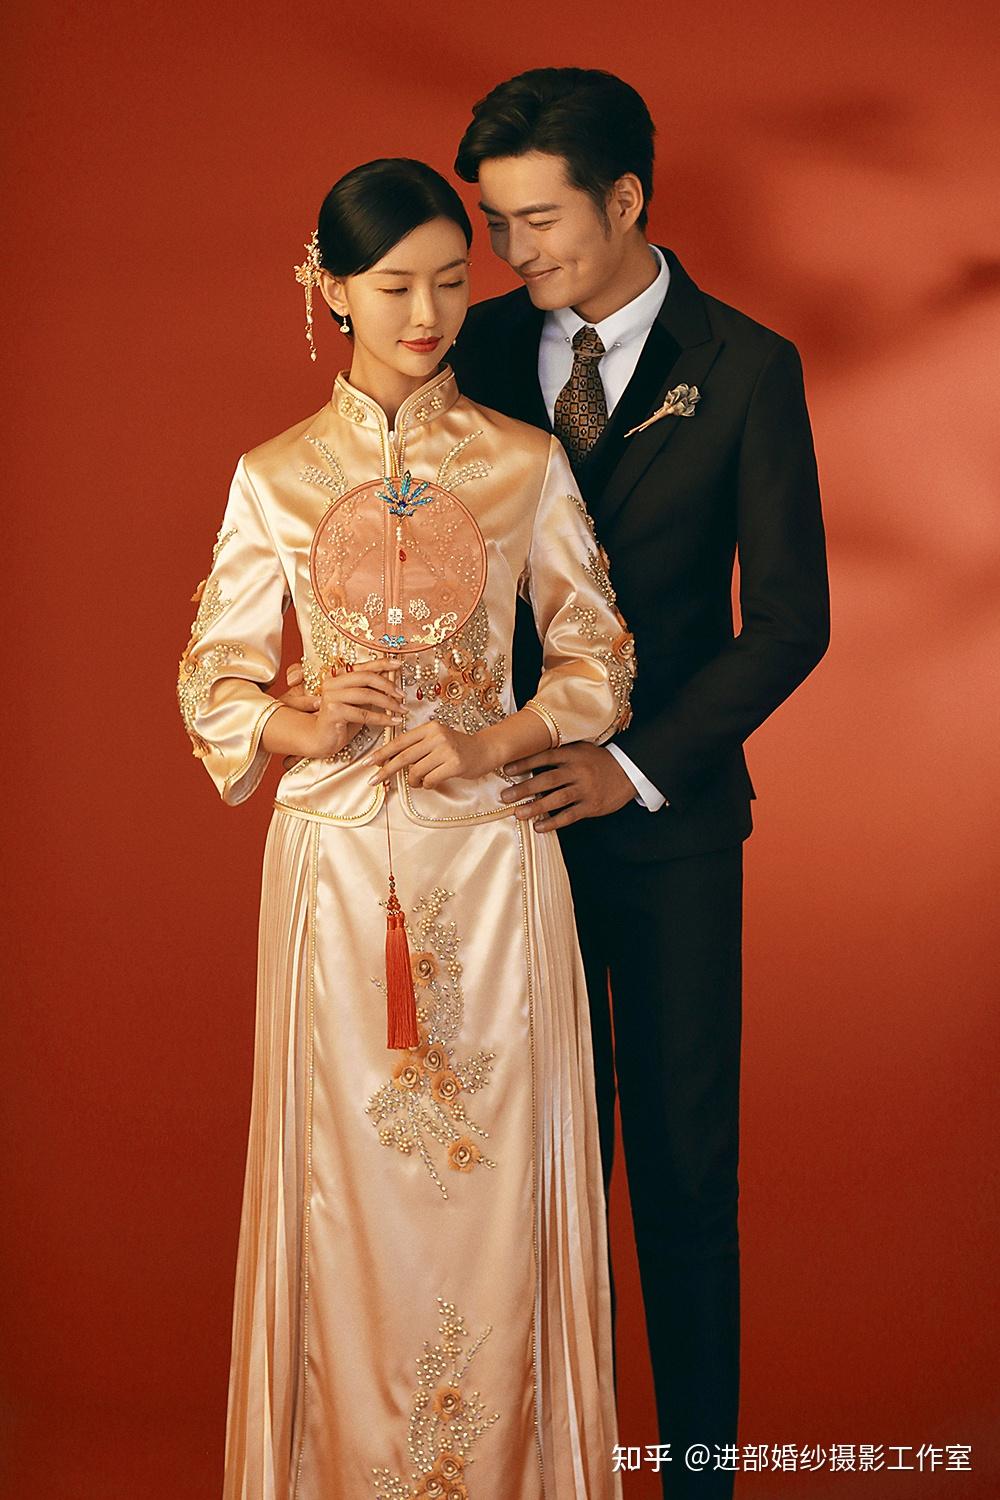 长沙哪家工作室拍中国风婚纱照比较好?要长辈满意的那种温婉典雅风~?